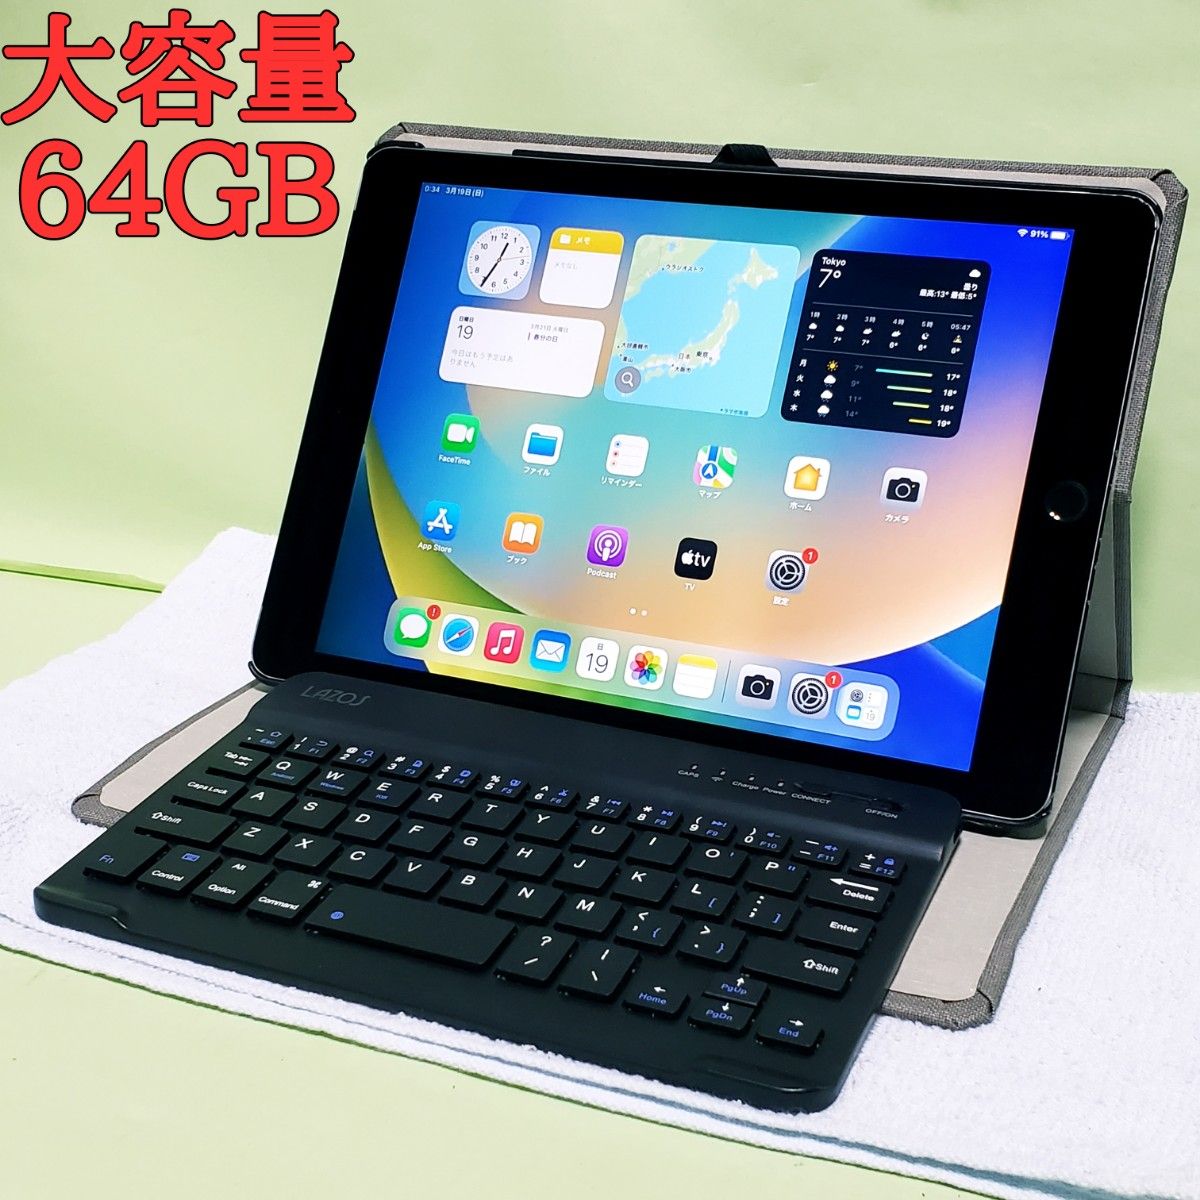 ☆キーボード&ケース付き☆大容量!!64GB☆Apple iPad Air 2☆-